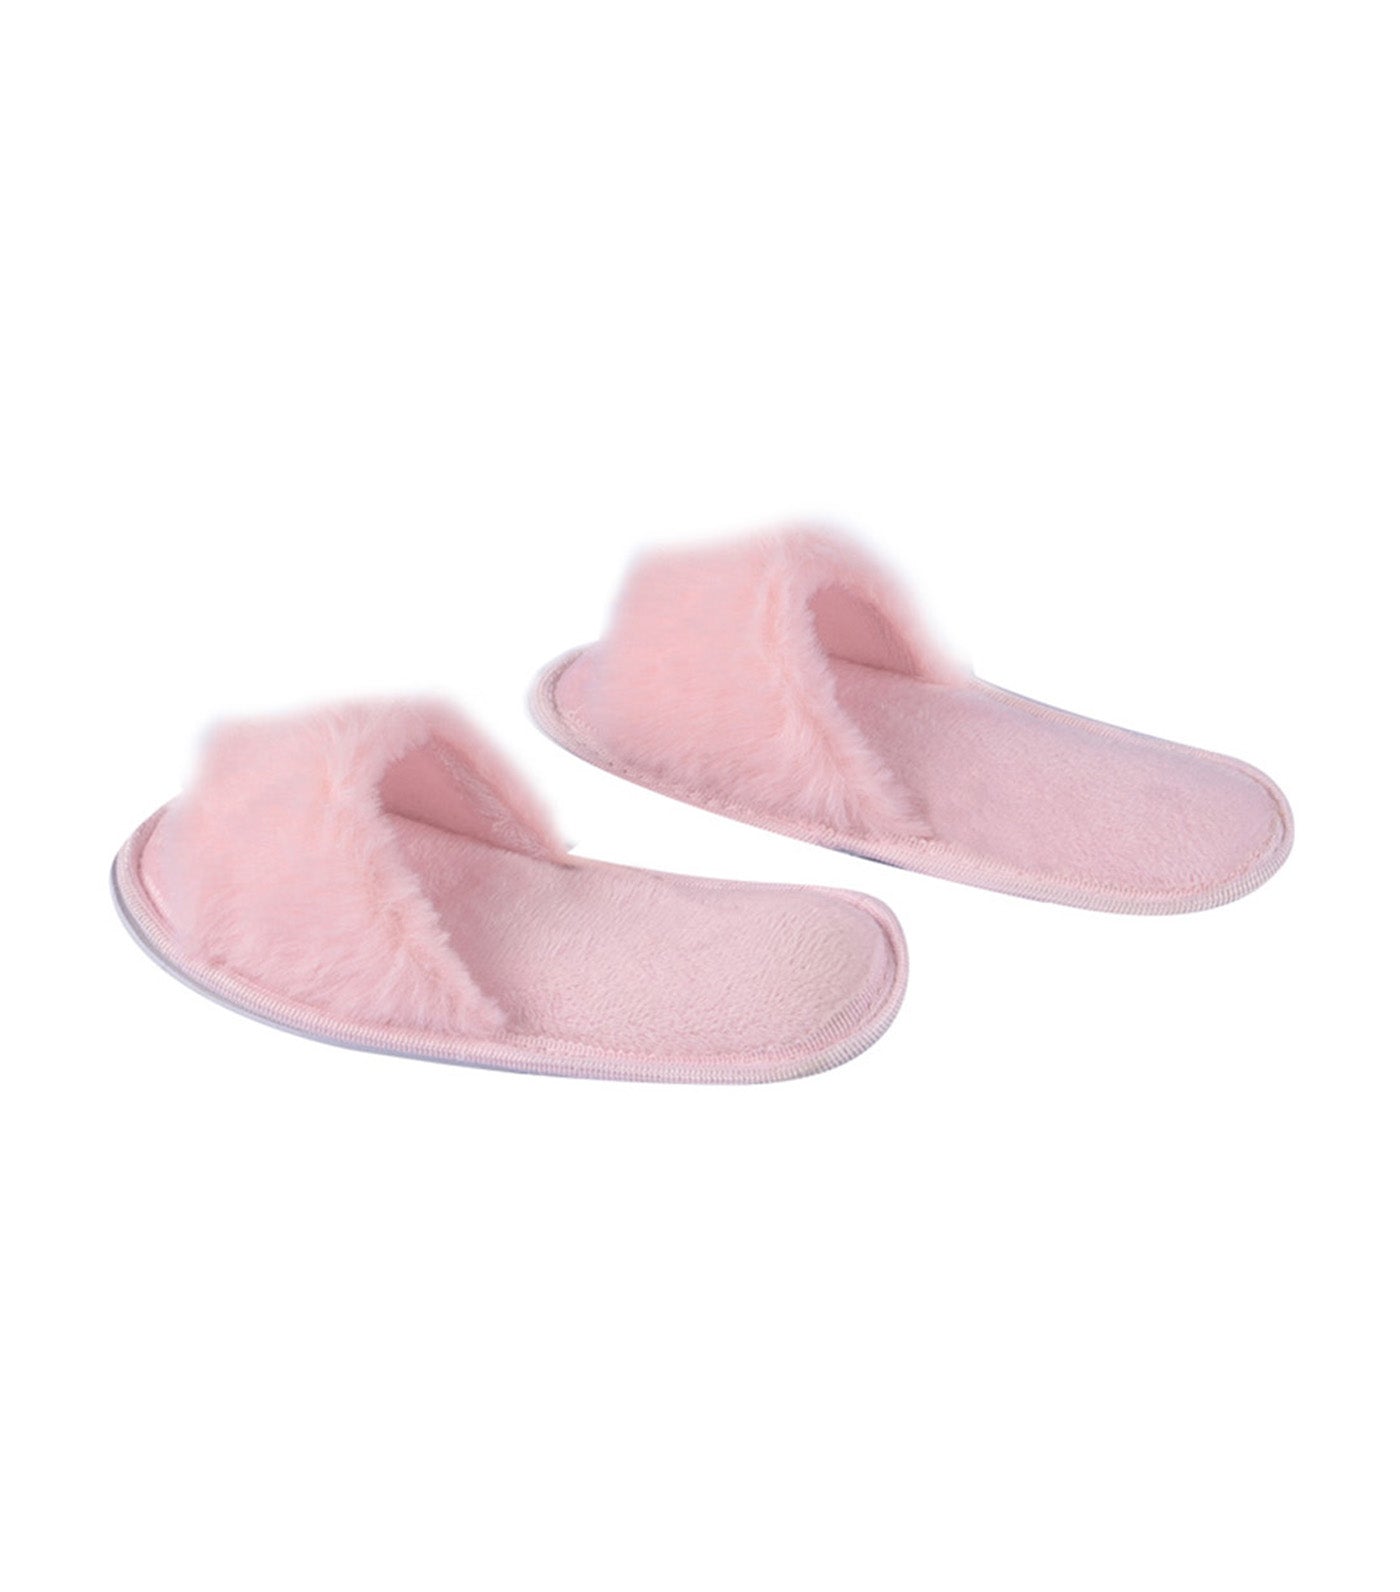 meet my feet pink ava slippers